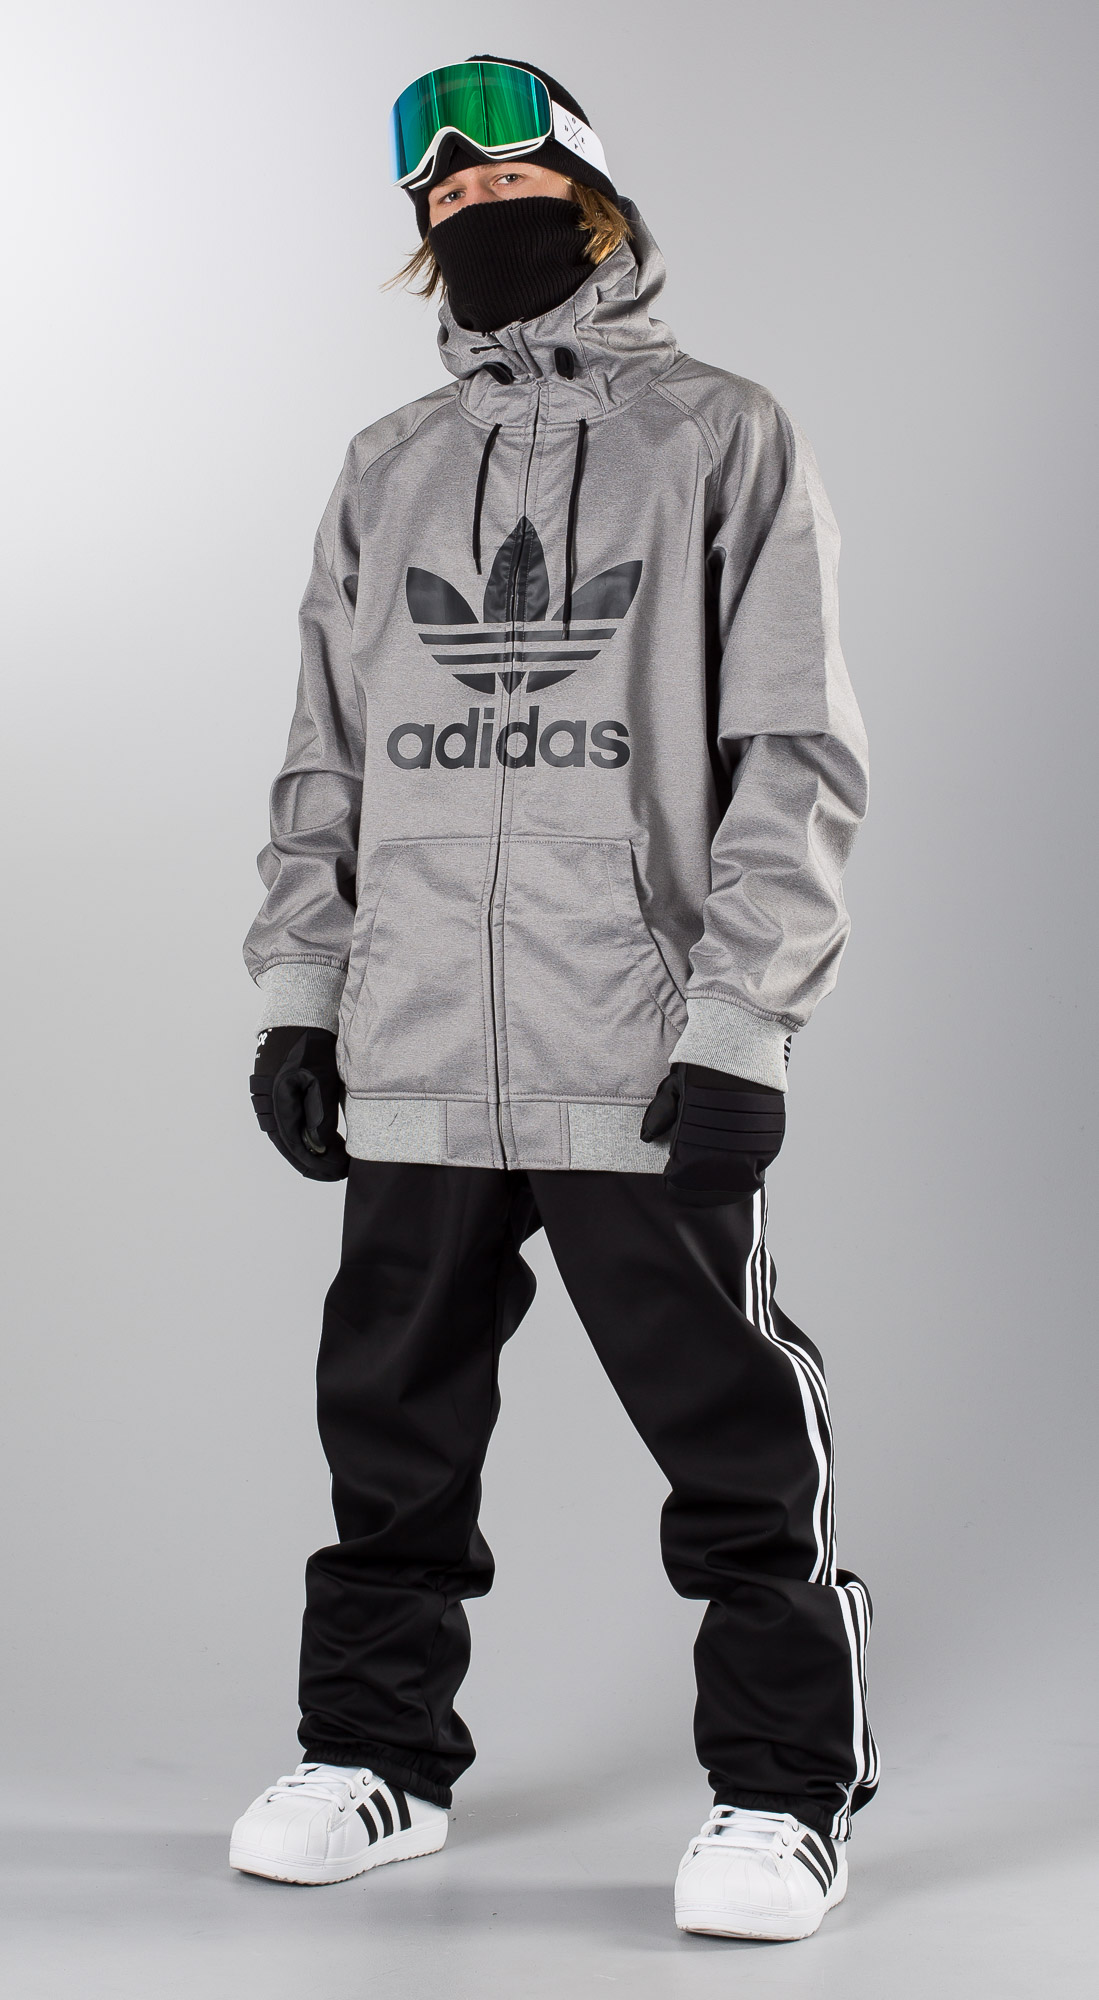 adidas greeley snowboard jacket